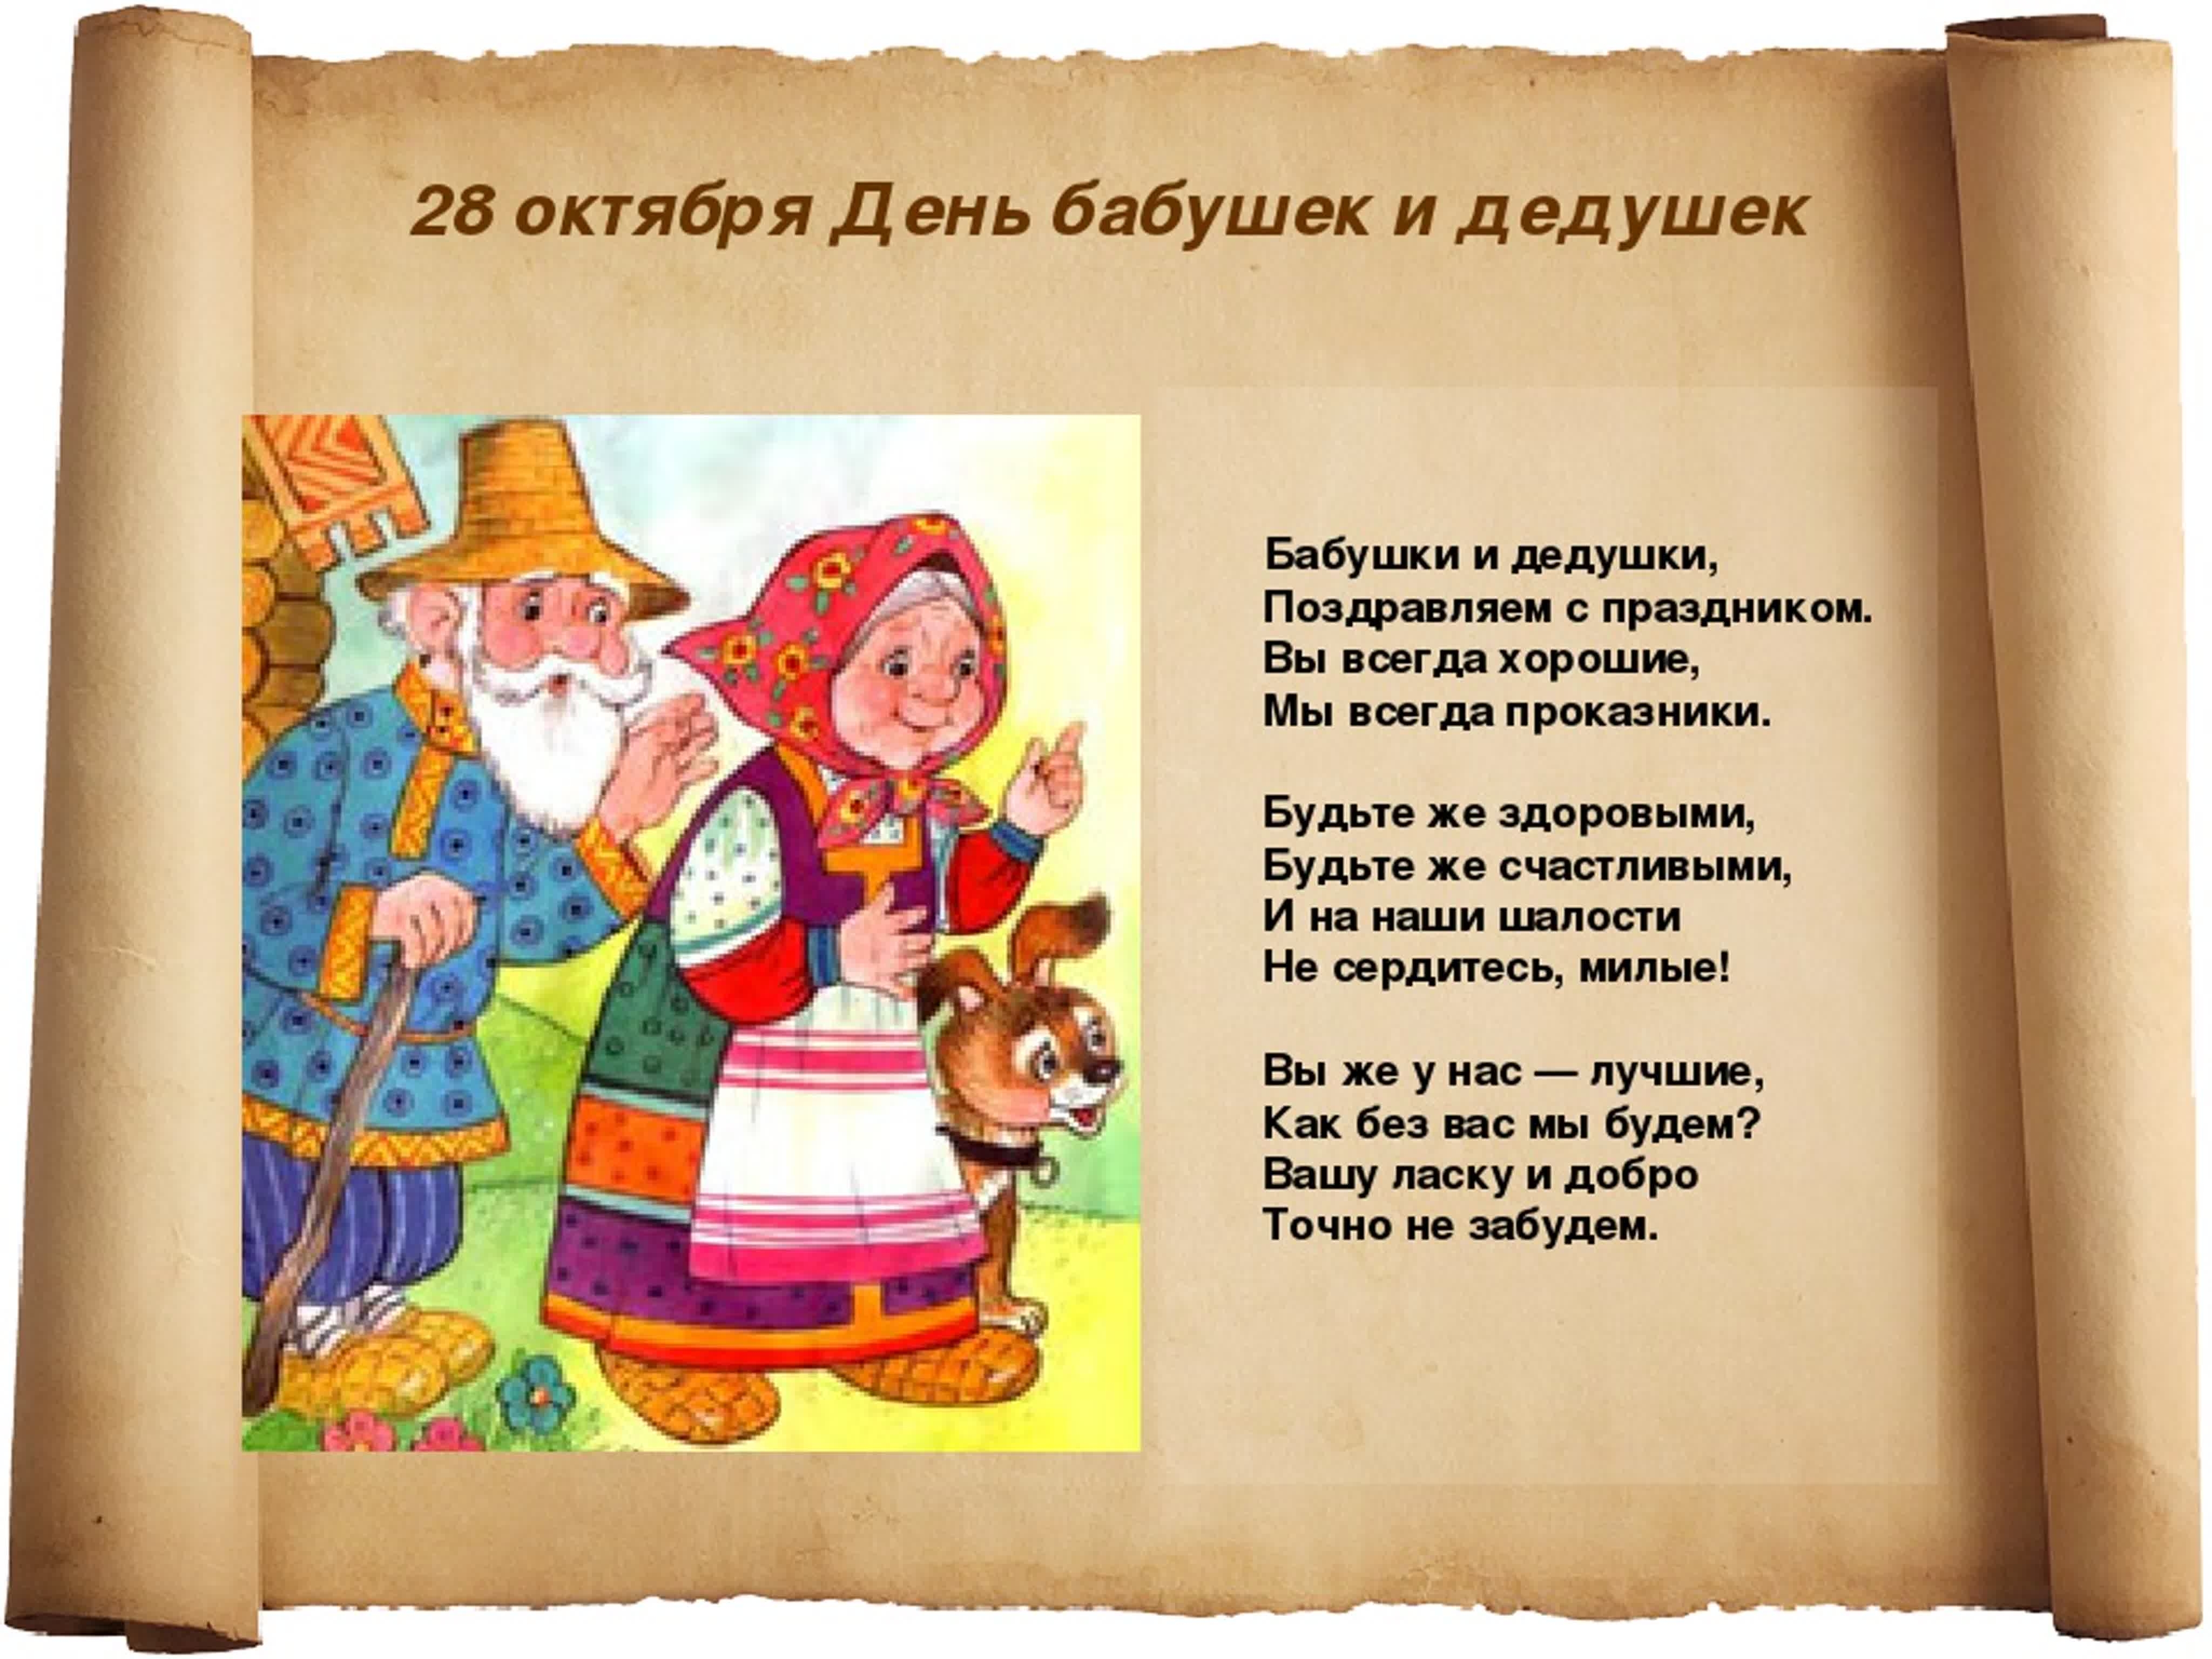 Когда бывает день бабушек. 28 Октября праздник бабушек. День бабушек и дедушек в России. Поздравление бабушек и дедушек. 28 Октября день бабушек и дедушек поздравления.